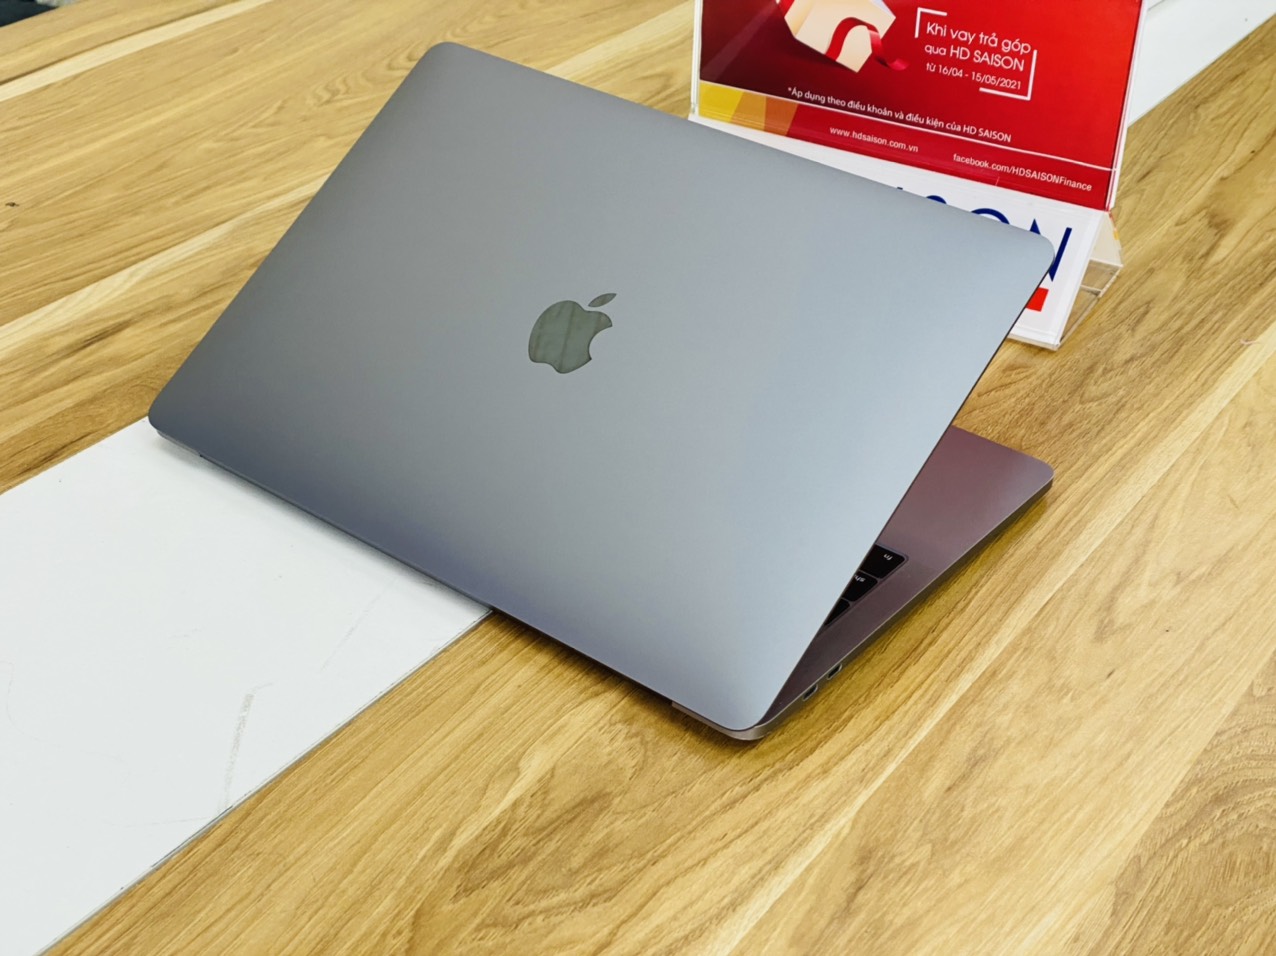 Macbook Pro 13-inch 2016